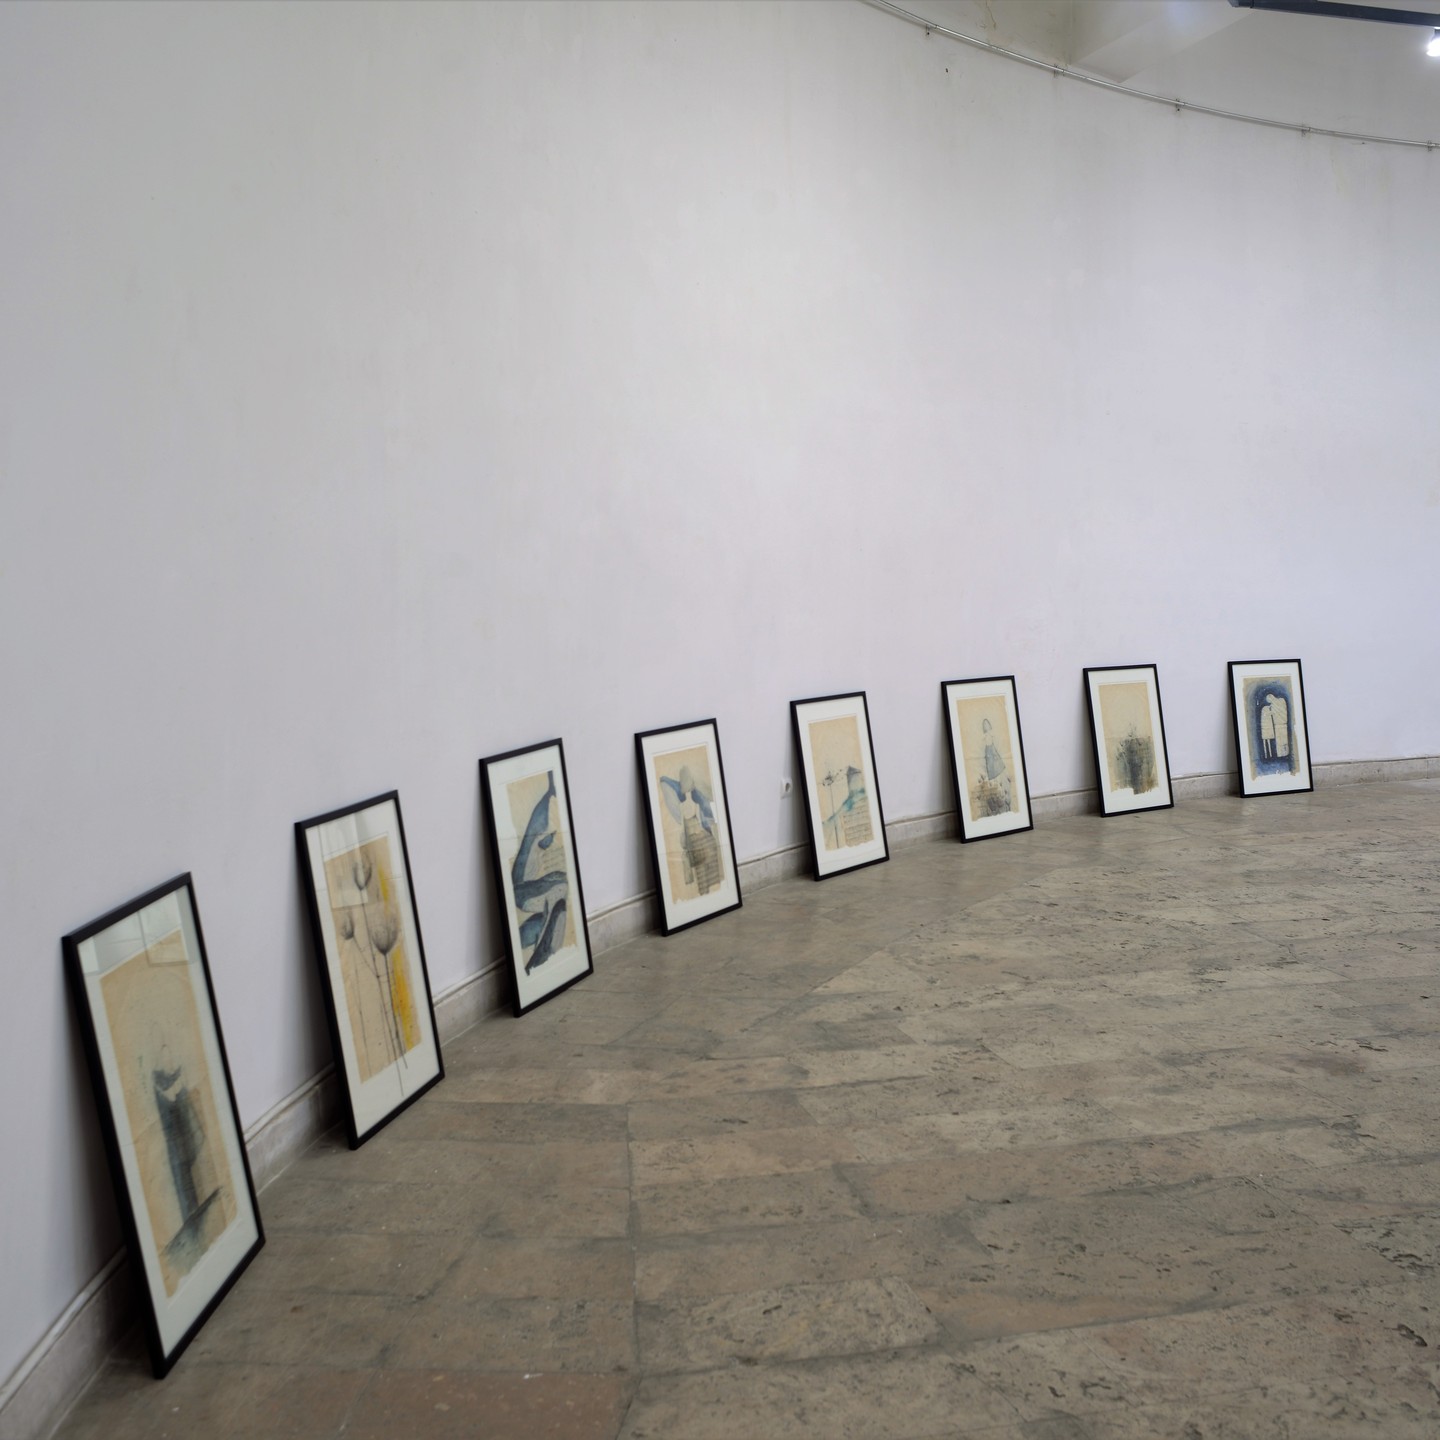 Армянская живопись, фотобиблиотека и NFT: гид по Еревану для поклонников современного искусства (фото 17)